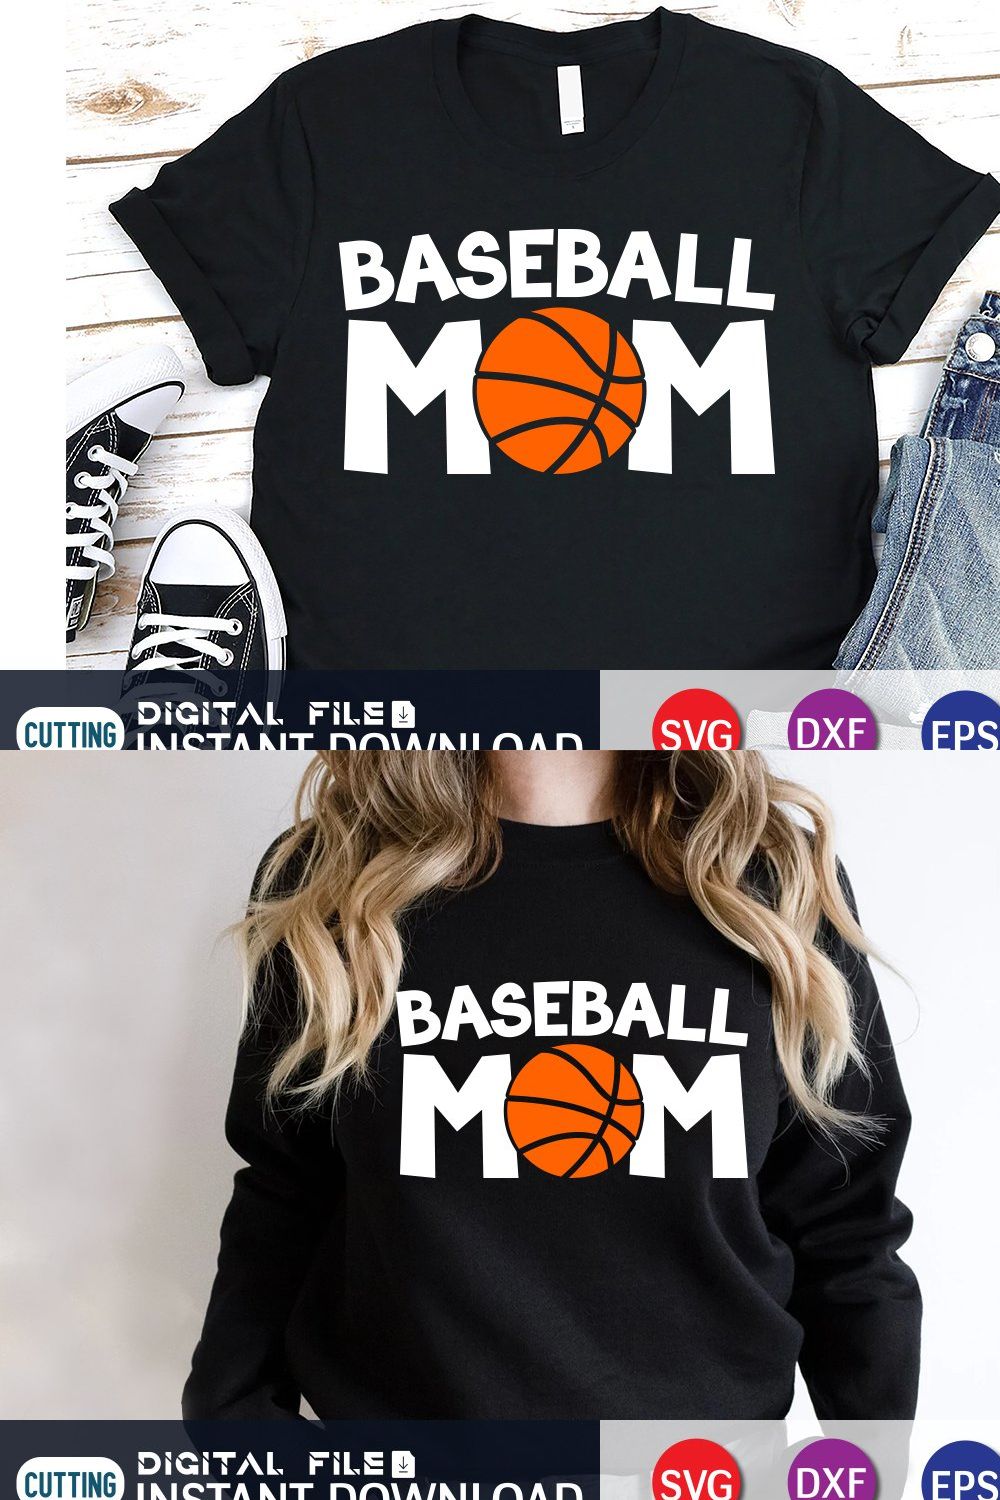 Baseball Mom Shirt, Gamer Mom SVG pinterest preview image.